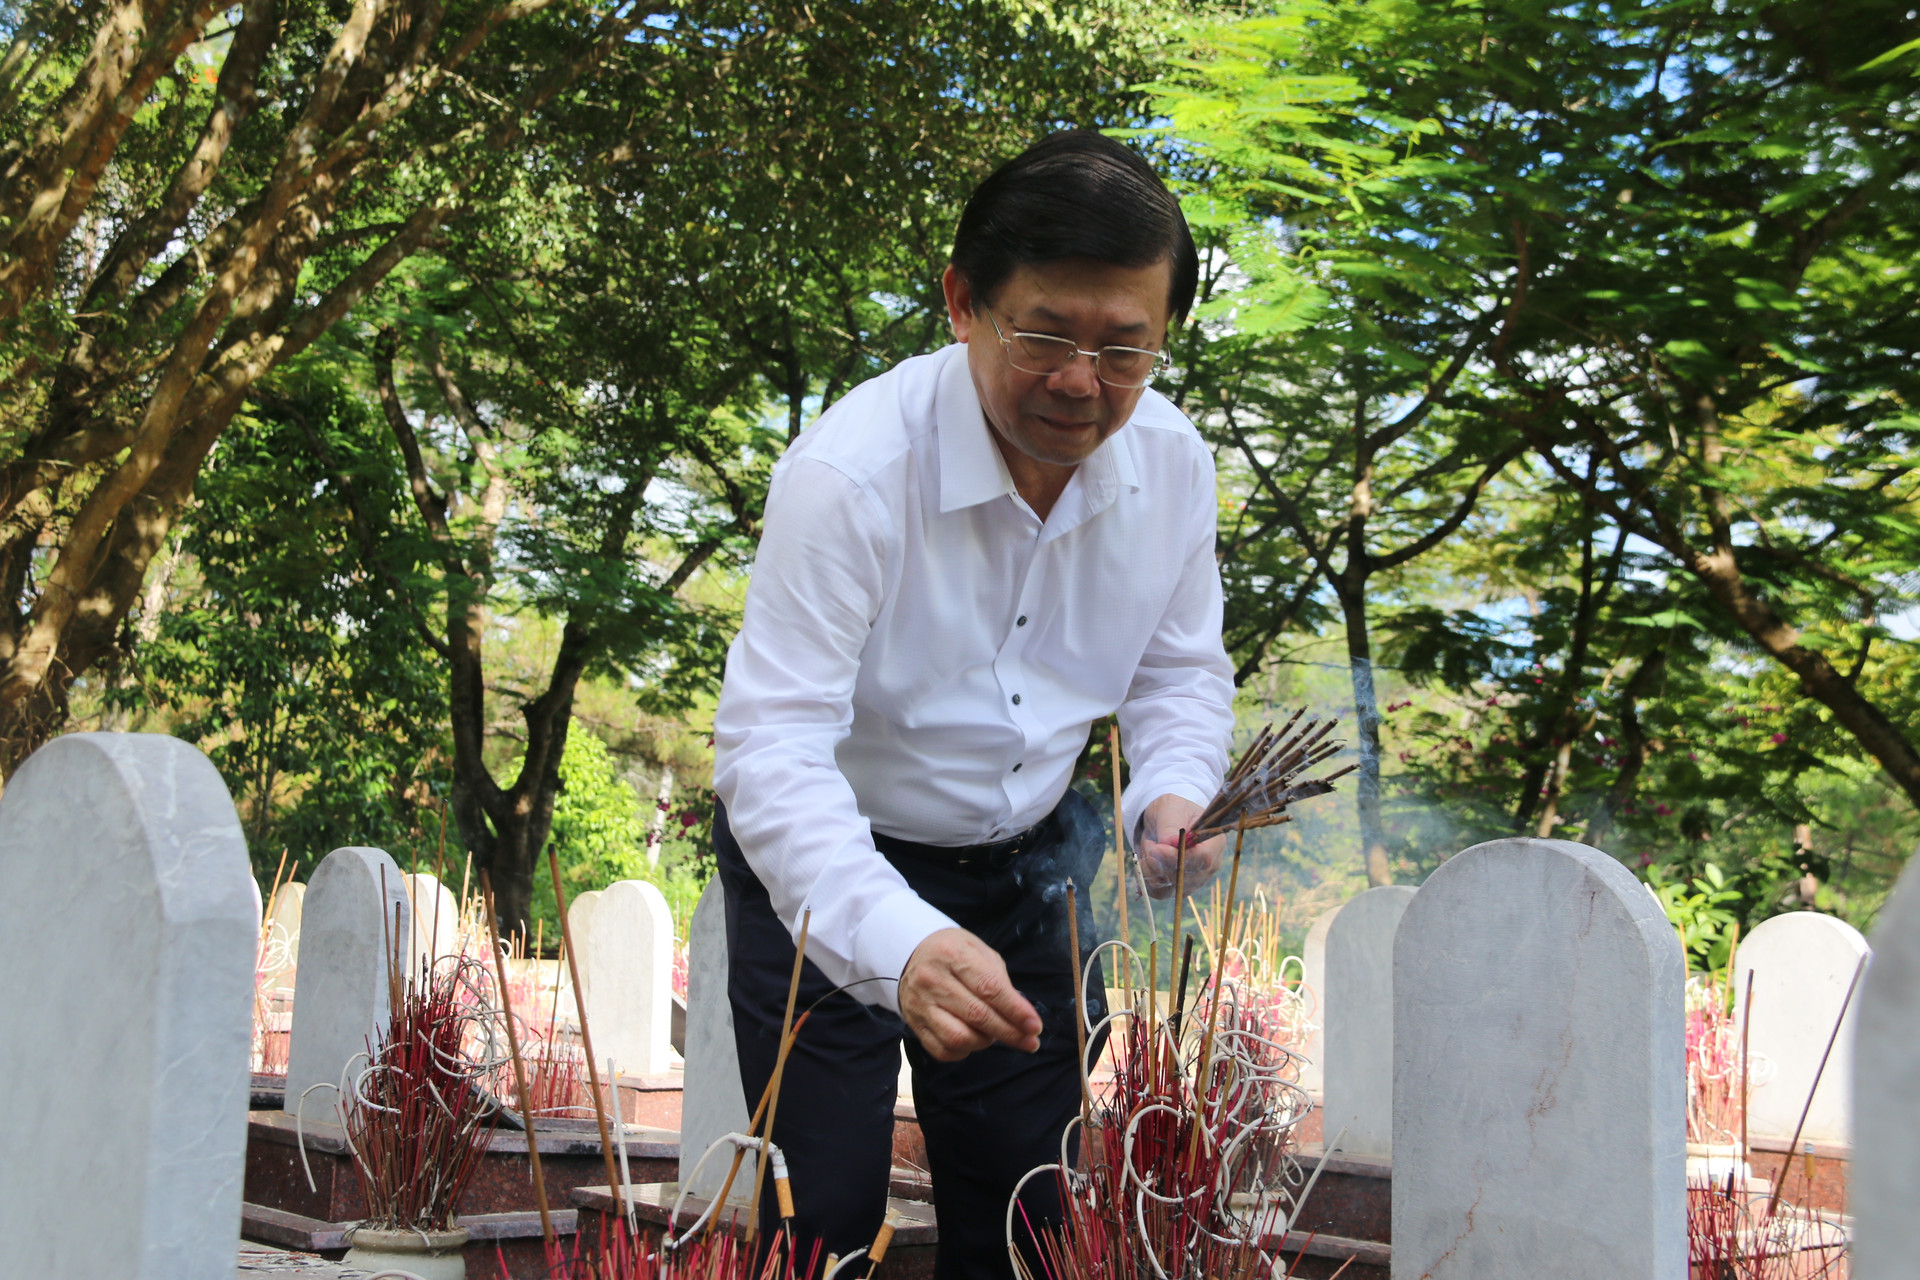 Đoàn dâng hương, dâng hoa viếng anh hùng liệt sĩ tại Nghĩa trang Liệt sĩ Quốc gia Trường Sơn.